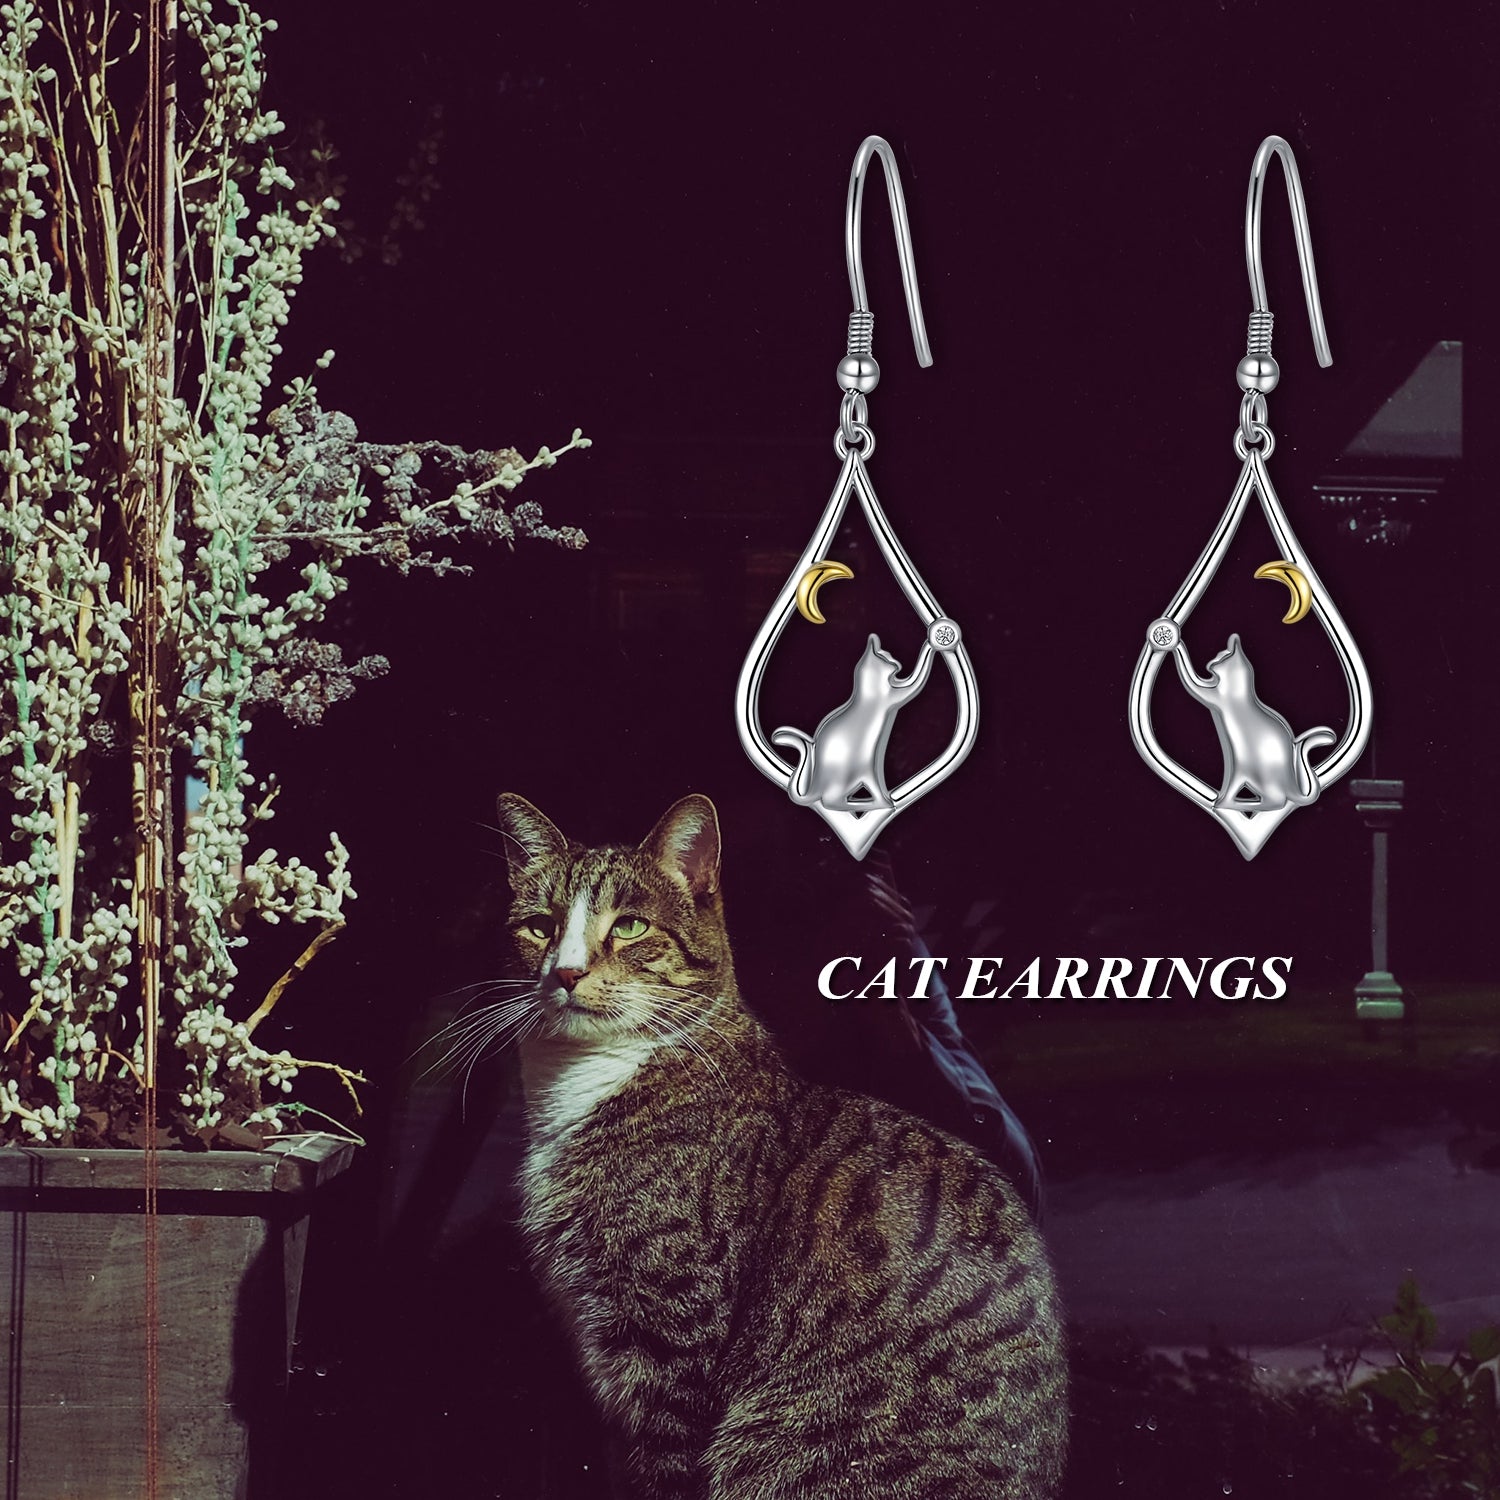 Cat Earrings Sterling Silver Cat Moon Dangle Drop Hooks Earrings Cute Animal Jewelry Cat Lovers Gifts for Women Teens Birthday - Niki Ice Jewelry 